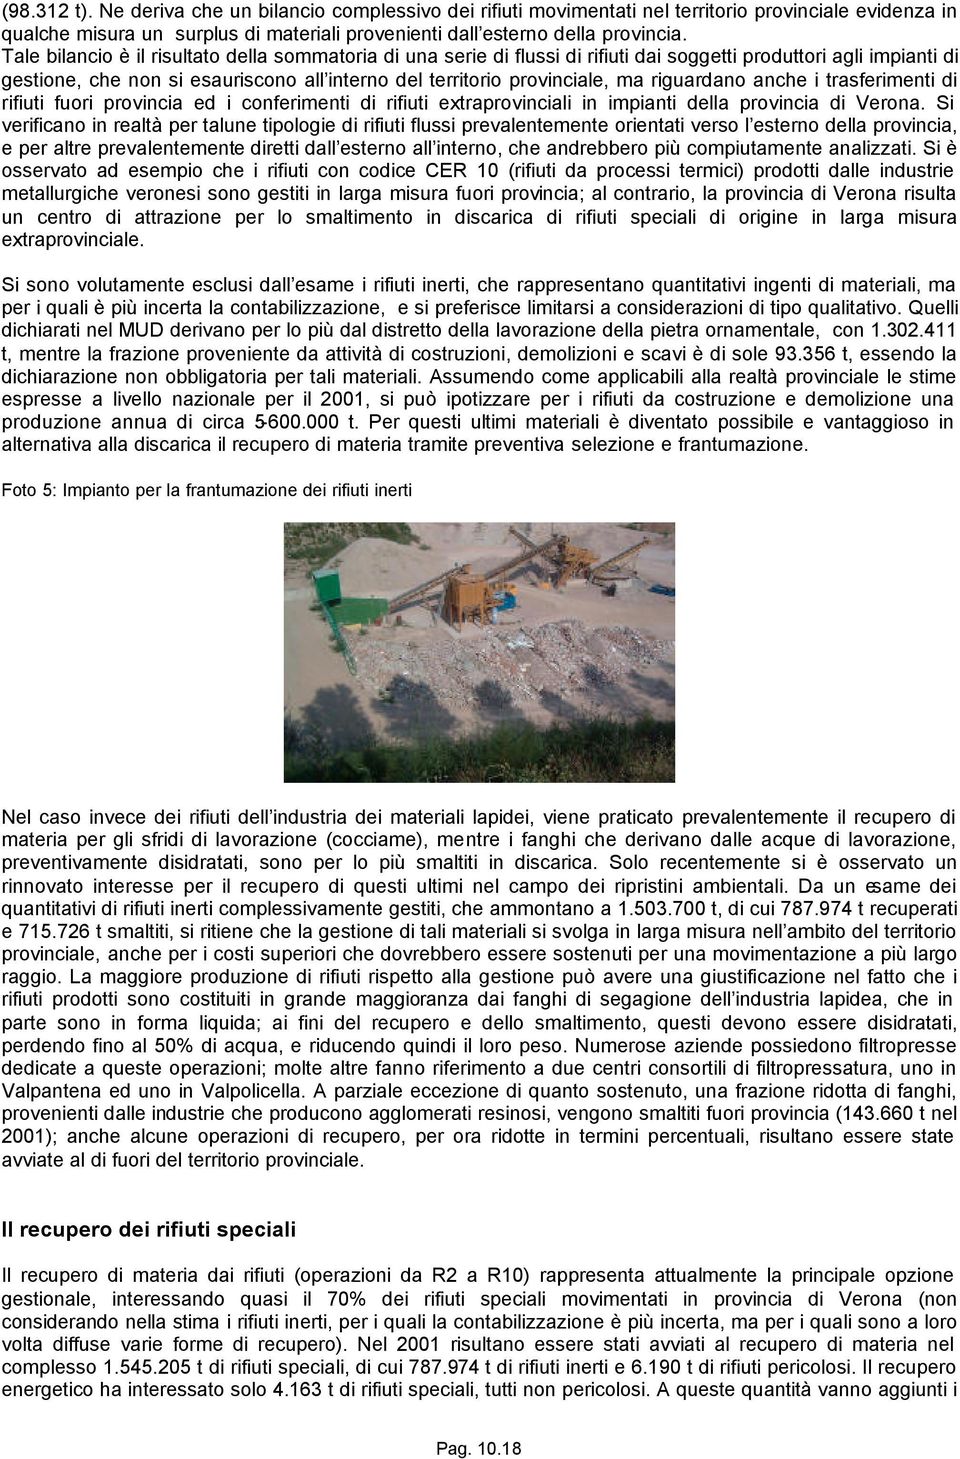 riguardano anche i trasferimenti di rifiuti fuori provincia ed i conferimenti di rifiuti extraprovinciali in impianti della provincia di Verona.